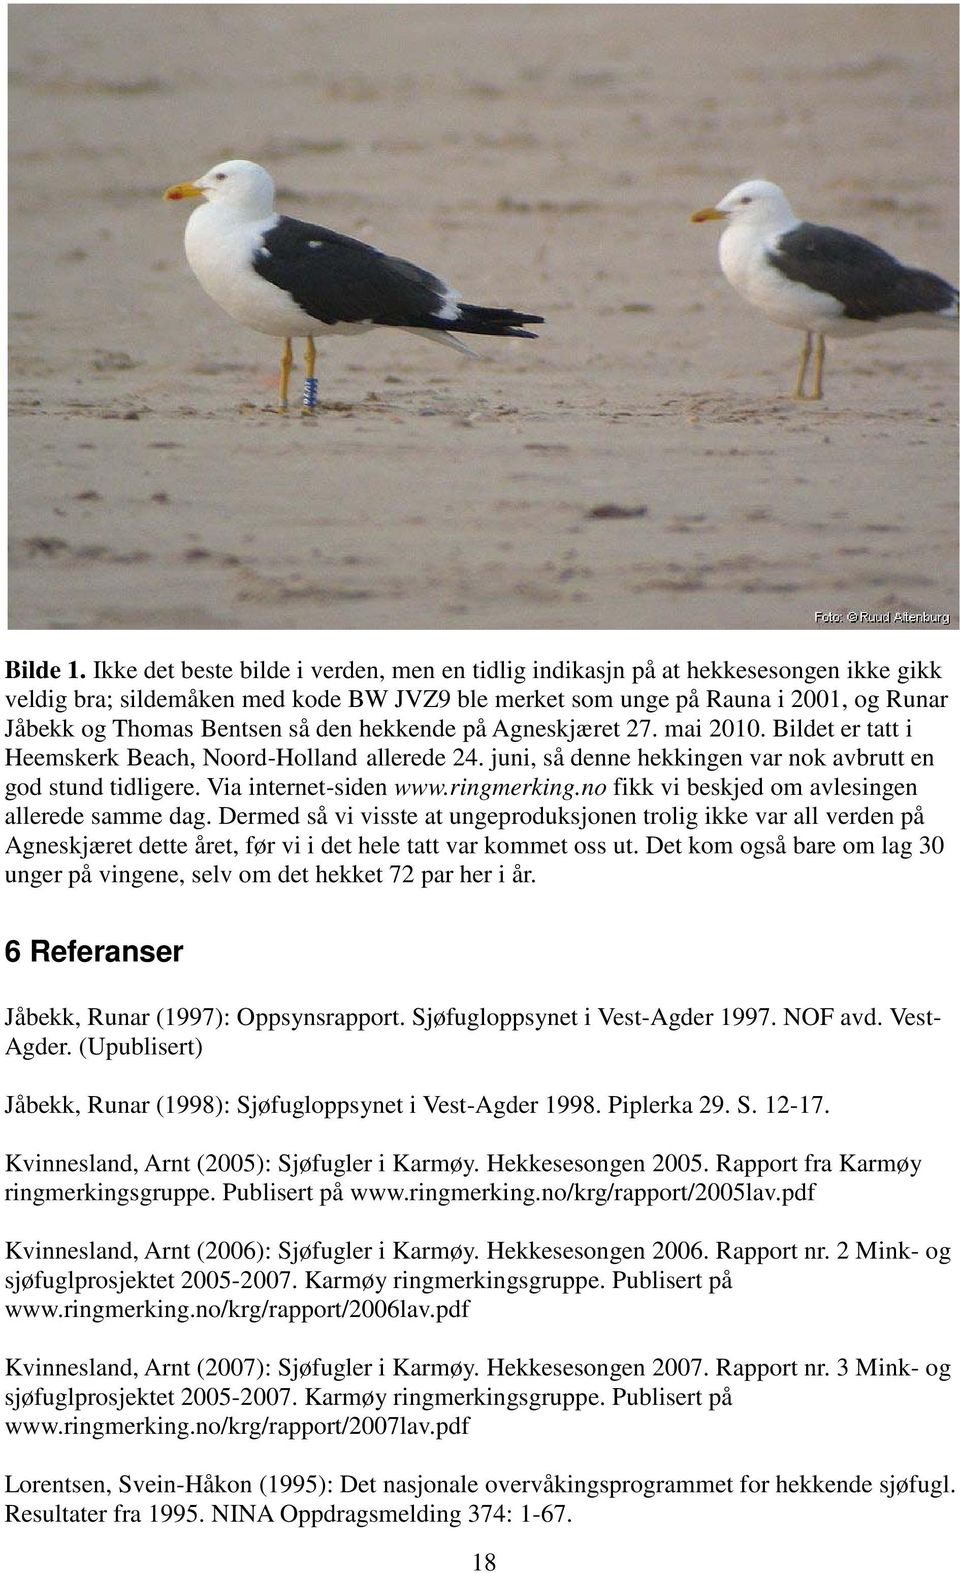 den hekkende på Agneskjæret 27. mai 2010. Bildet er tatt i Heemskerk Beach, Noord-Holland allerede 24. juni, så denne hekkingen var nok avbrutt en god stund tidligere. Via internet-siden www.